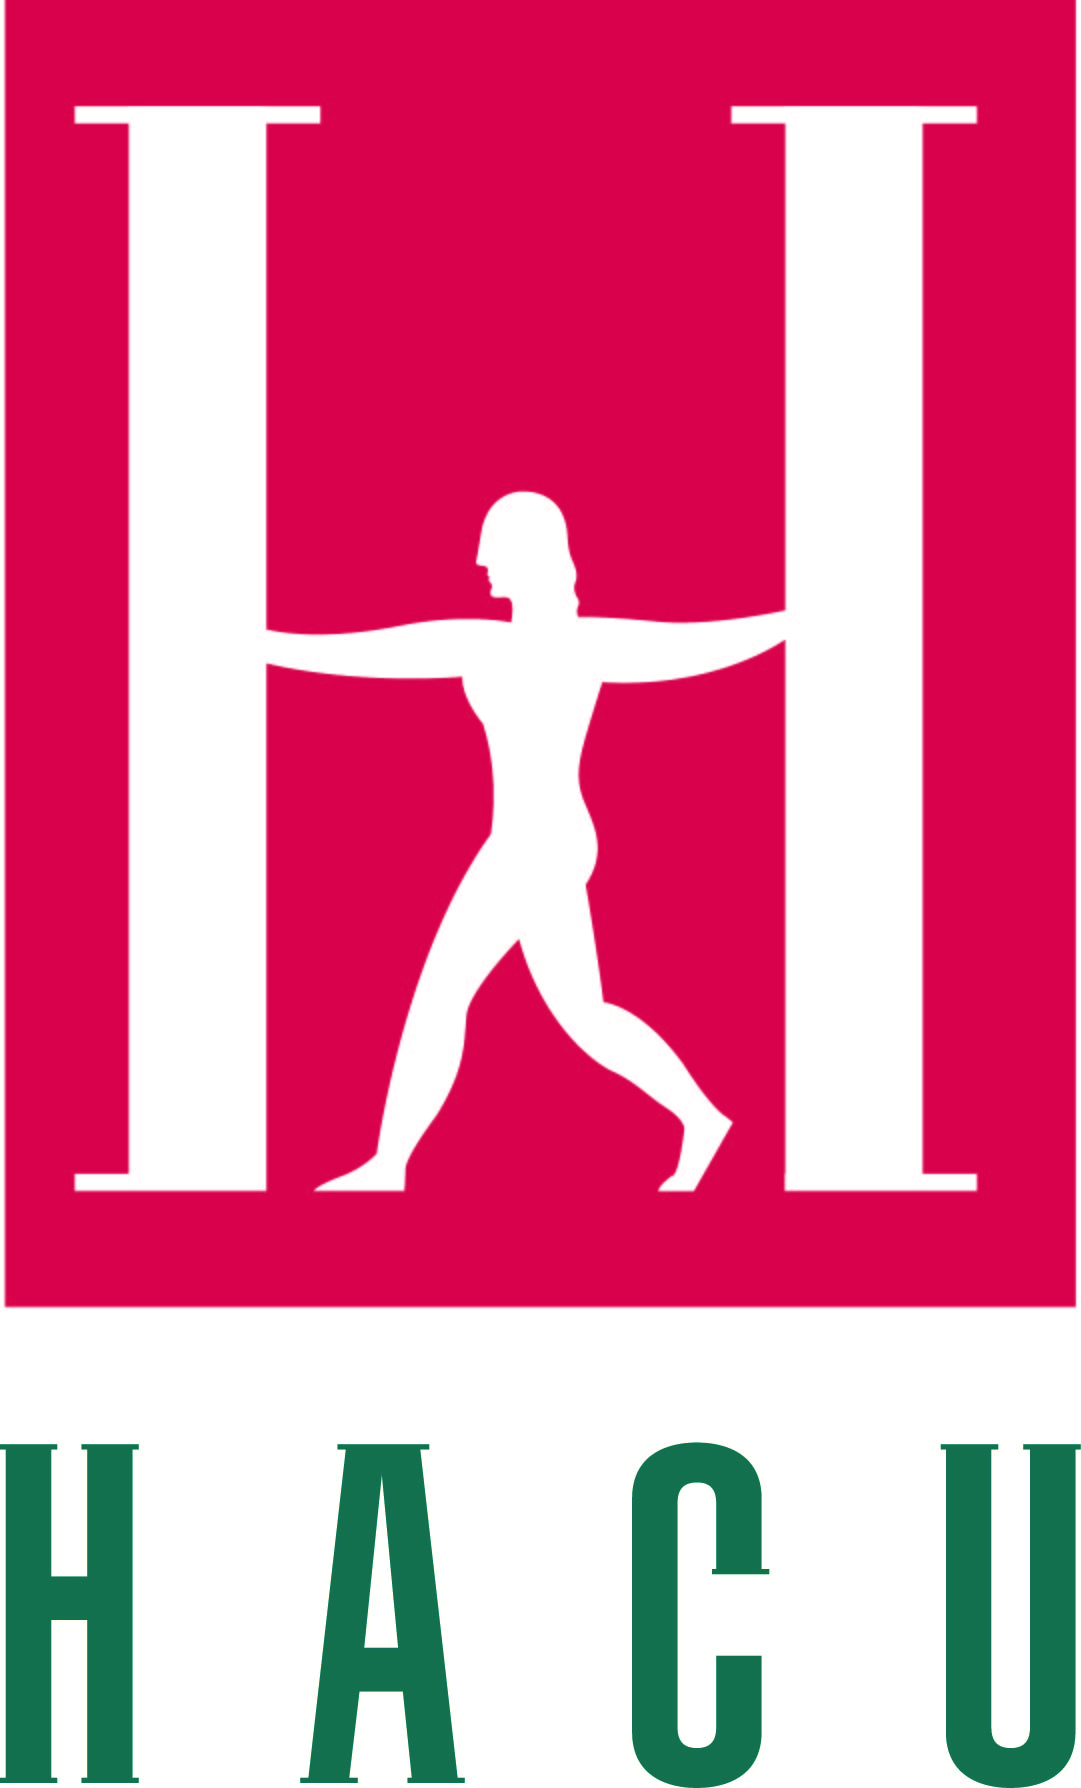 HACU_Logo_Short.jpg